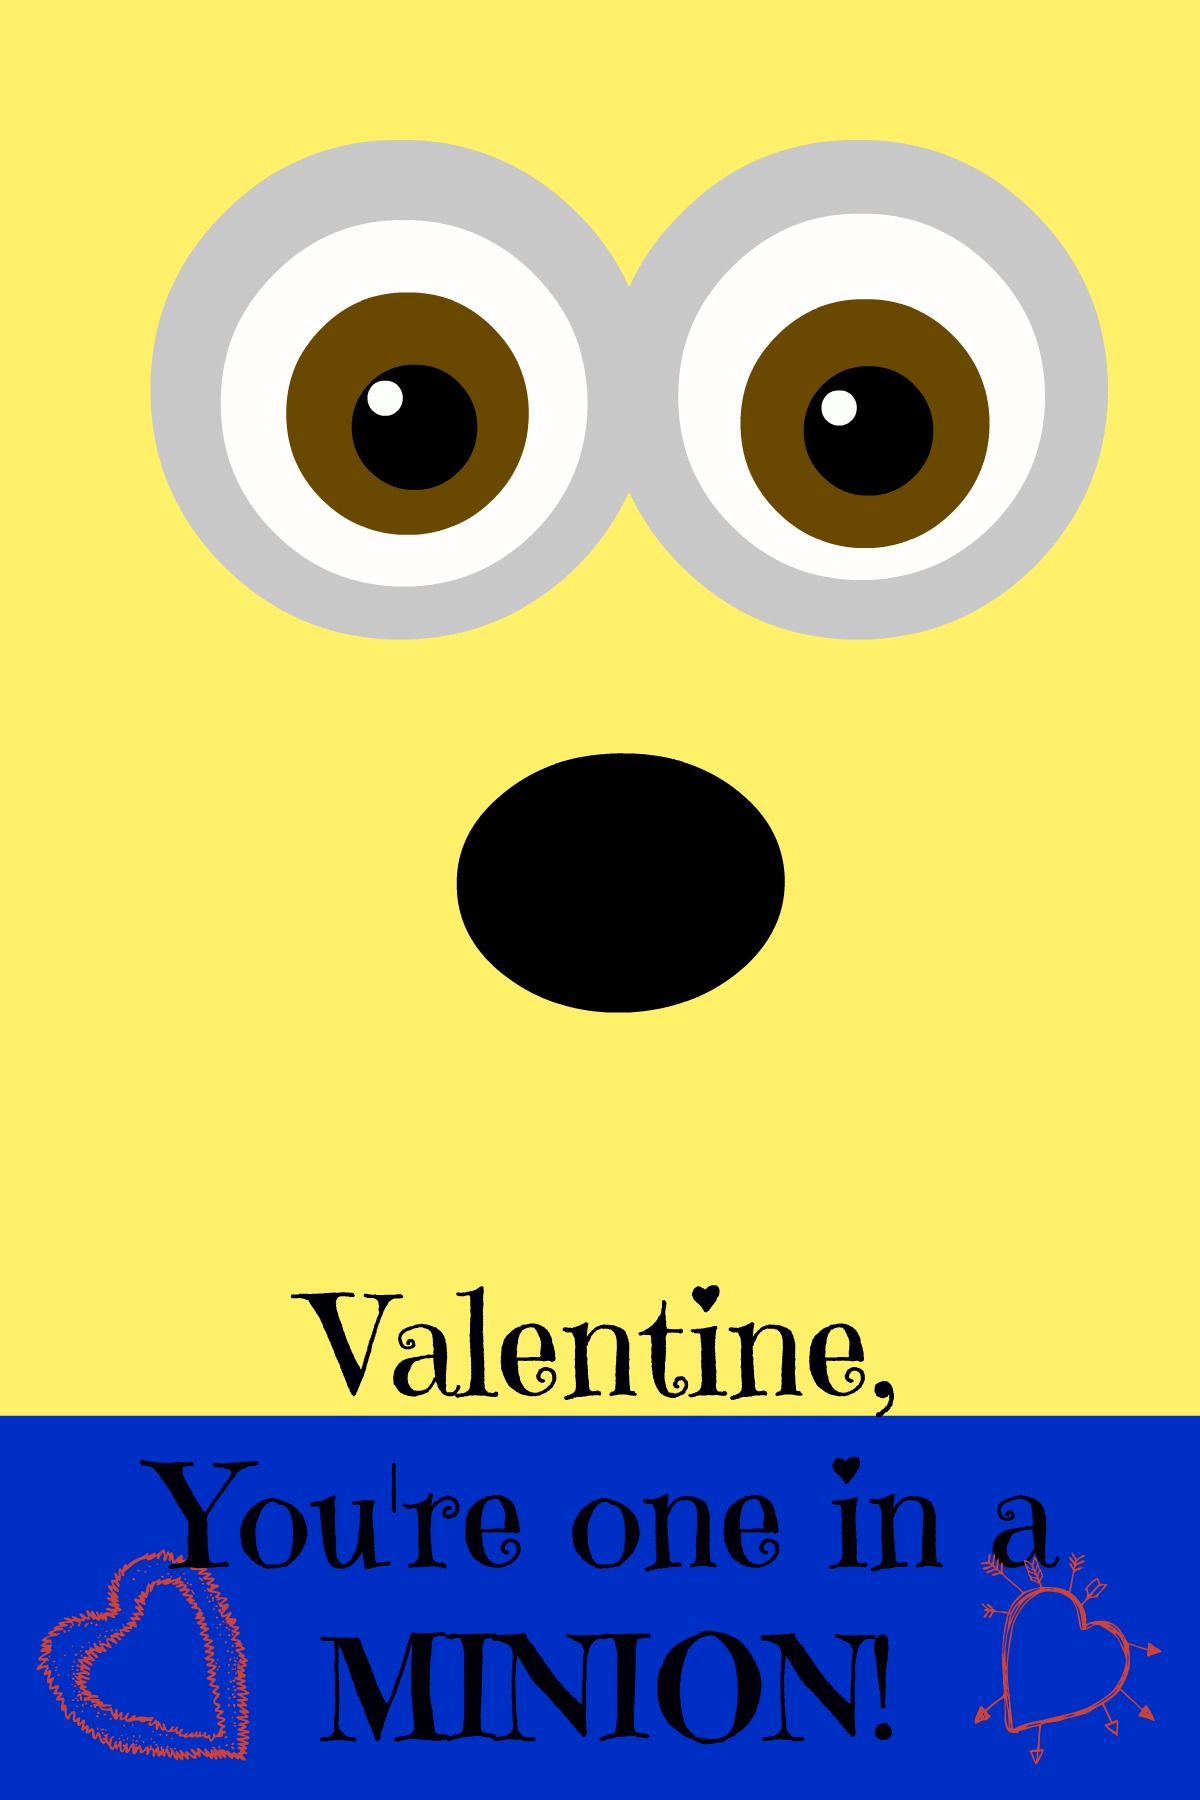 minion printable valentine, #minion, #valentine, #printable, #despicableme, #oneinaminion